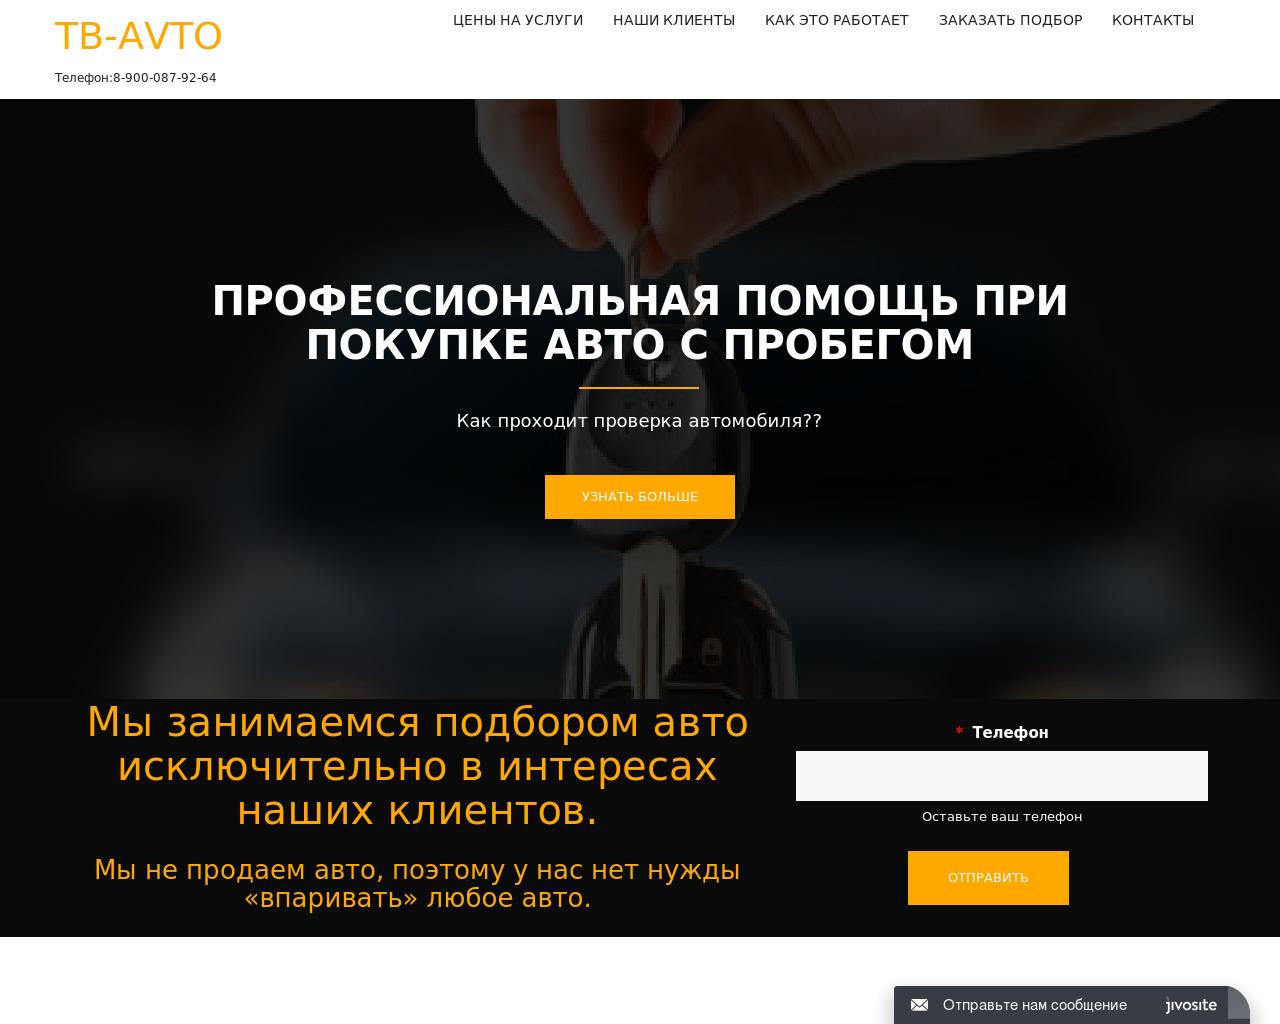 Изображение сайта tb-avto.ru в разрешении 1280x1024